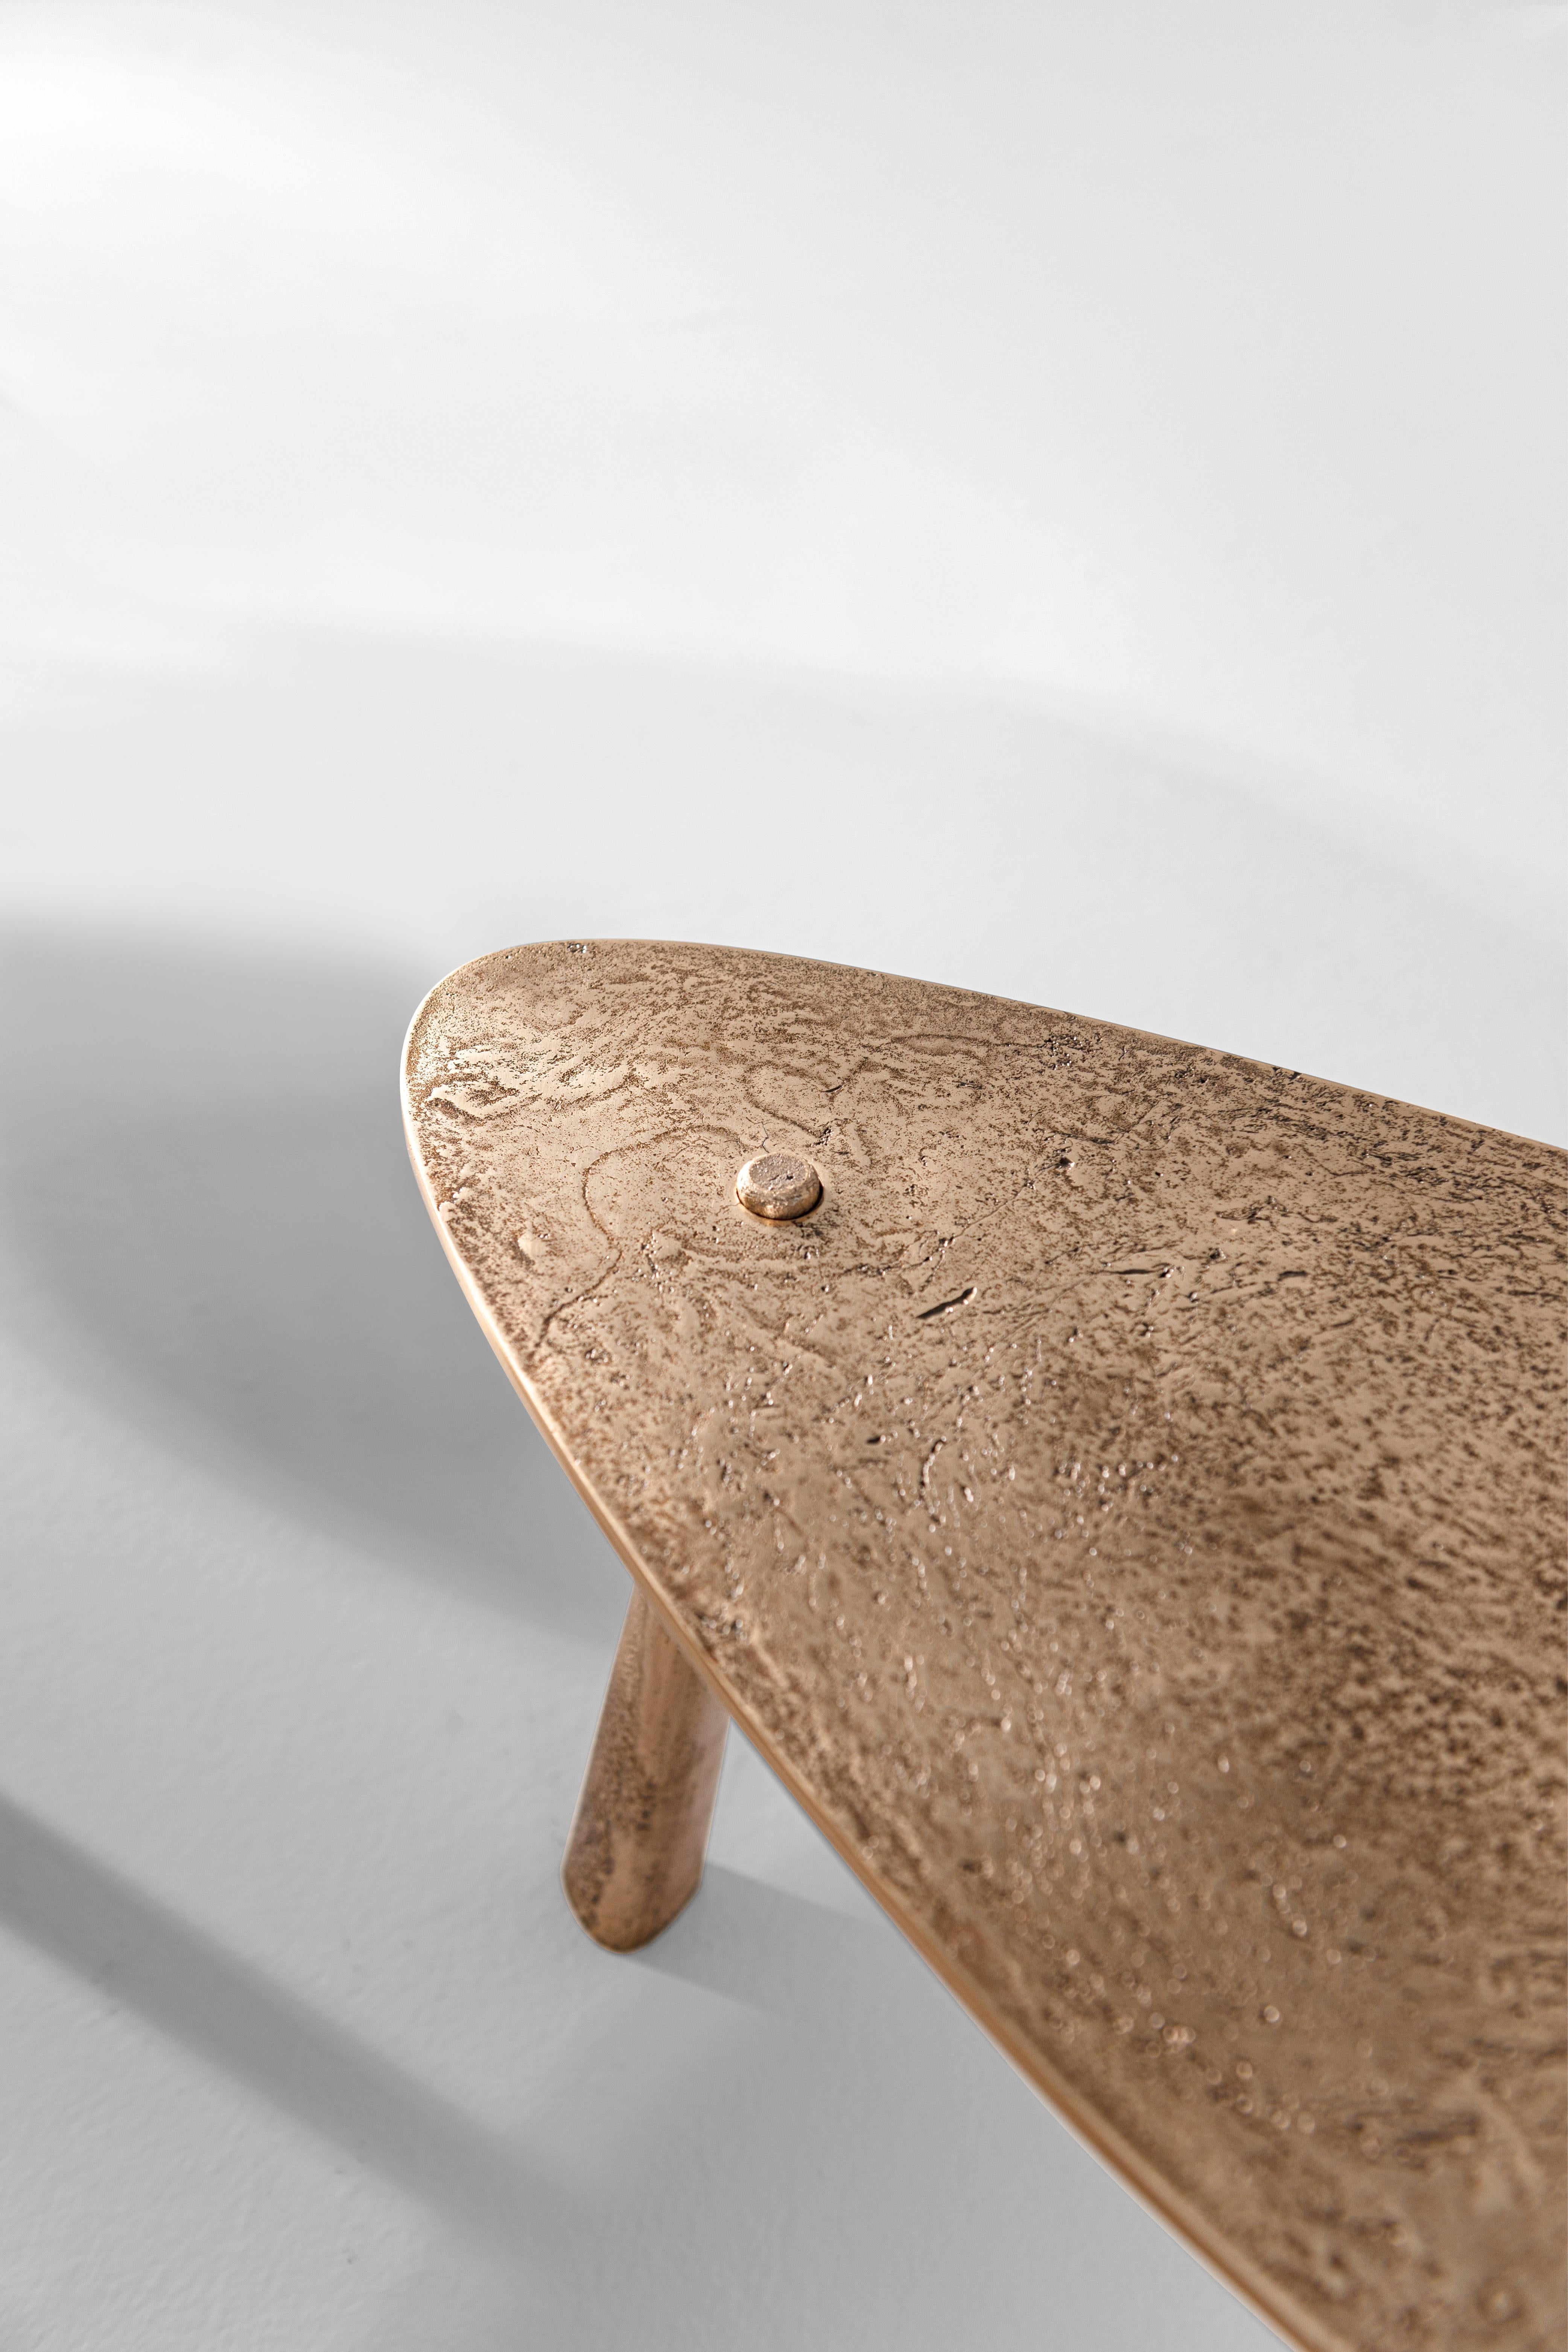 La table basse Drop est fabriquée par un procédé de fonte de bronze, un art ancien datant de plus de 5 000 ans. Il tire son nom de son design minimal mais sophistiqué : trois pieds apparemment coniques traversent un plateau en forme de goutte d'eau.